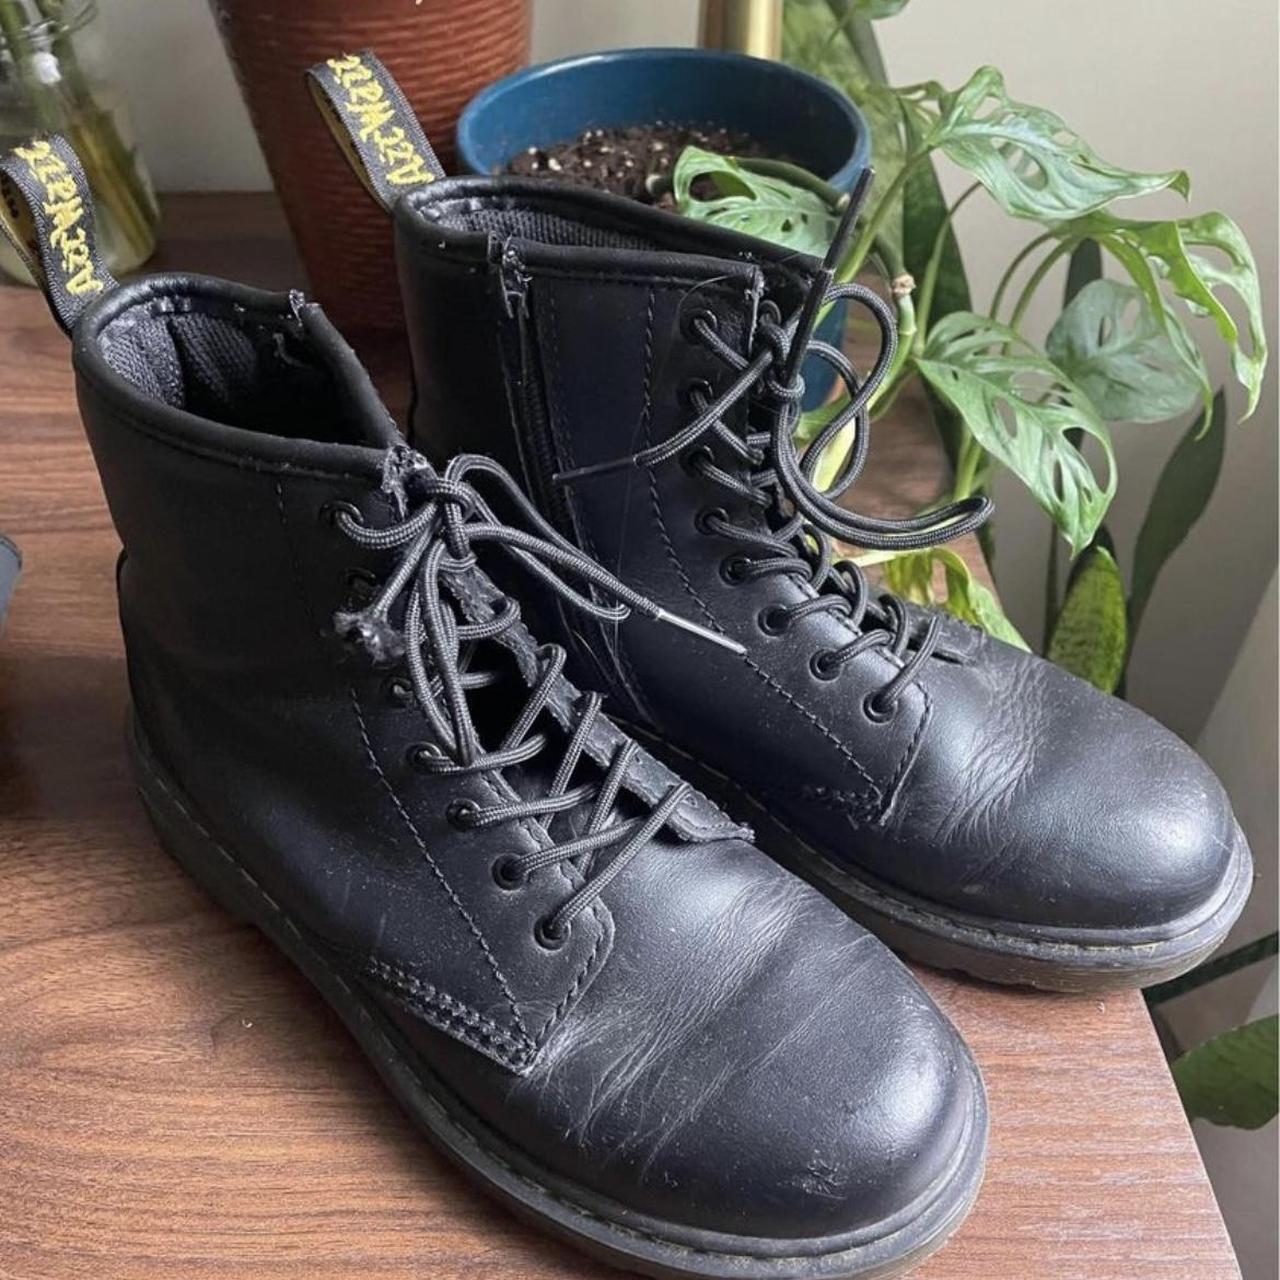 Black Dr Marten boots Size: 5 in womens / 4 in... - Depop